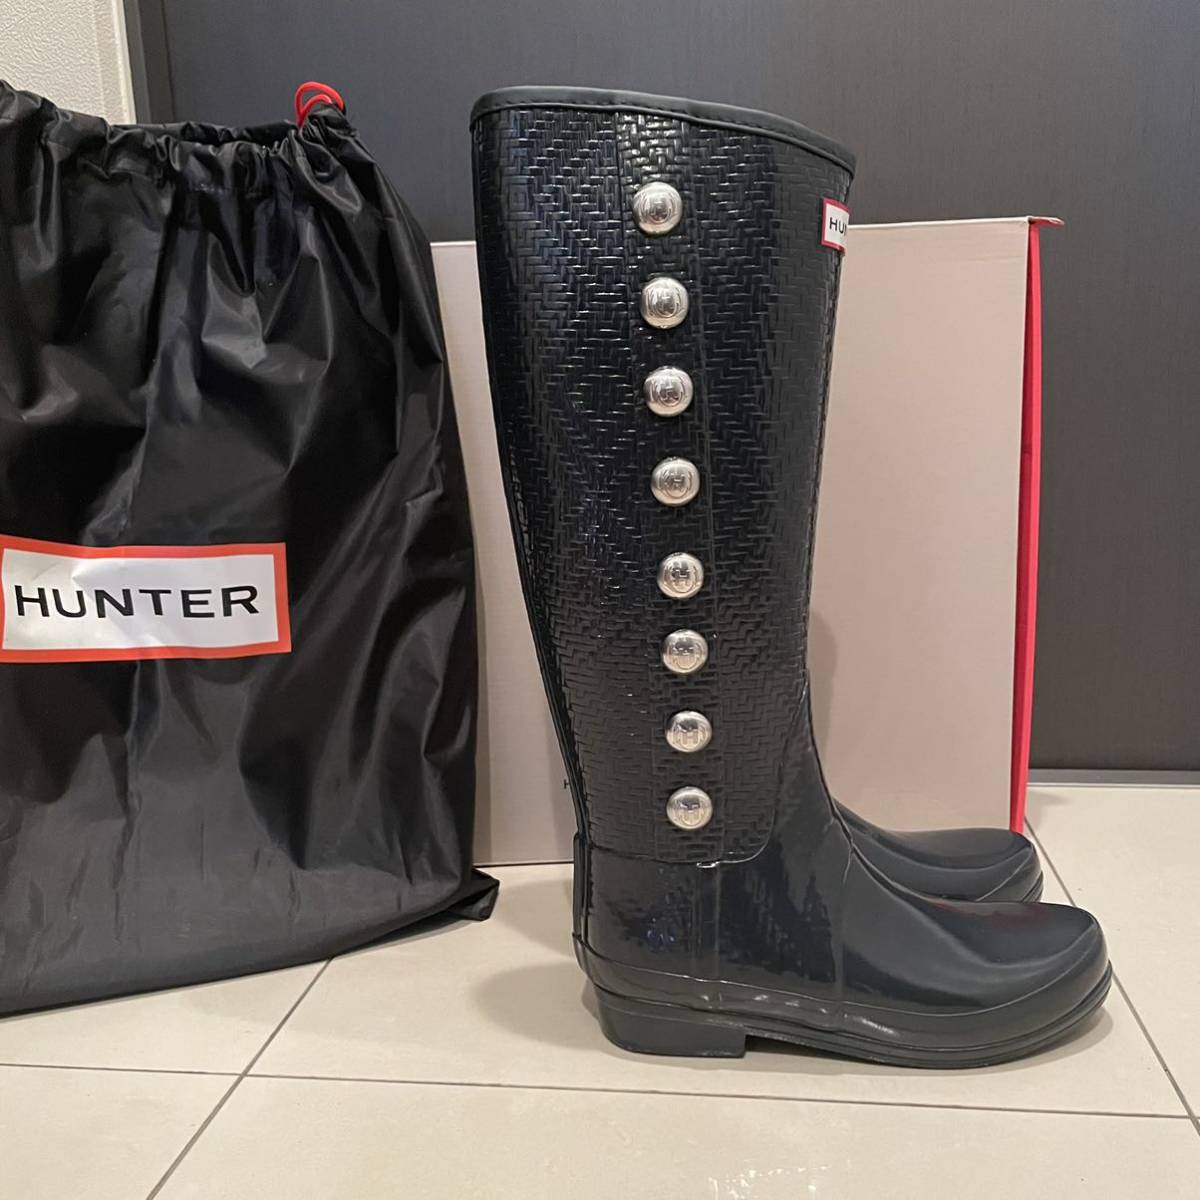  бесплатная доставка HUNTER Hunter Lee jento Glo бук -HUNTER REGENT GROSVENOR влагостойкая обувь сапоги боковой кнопка темно-синий 